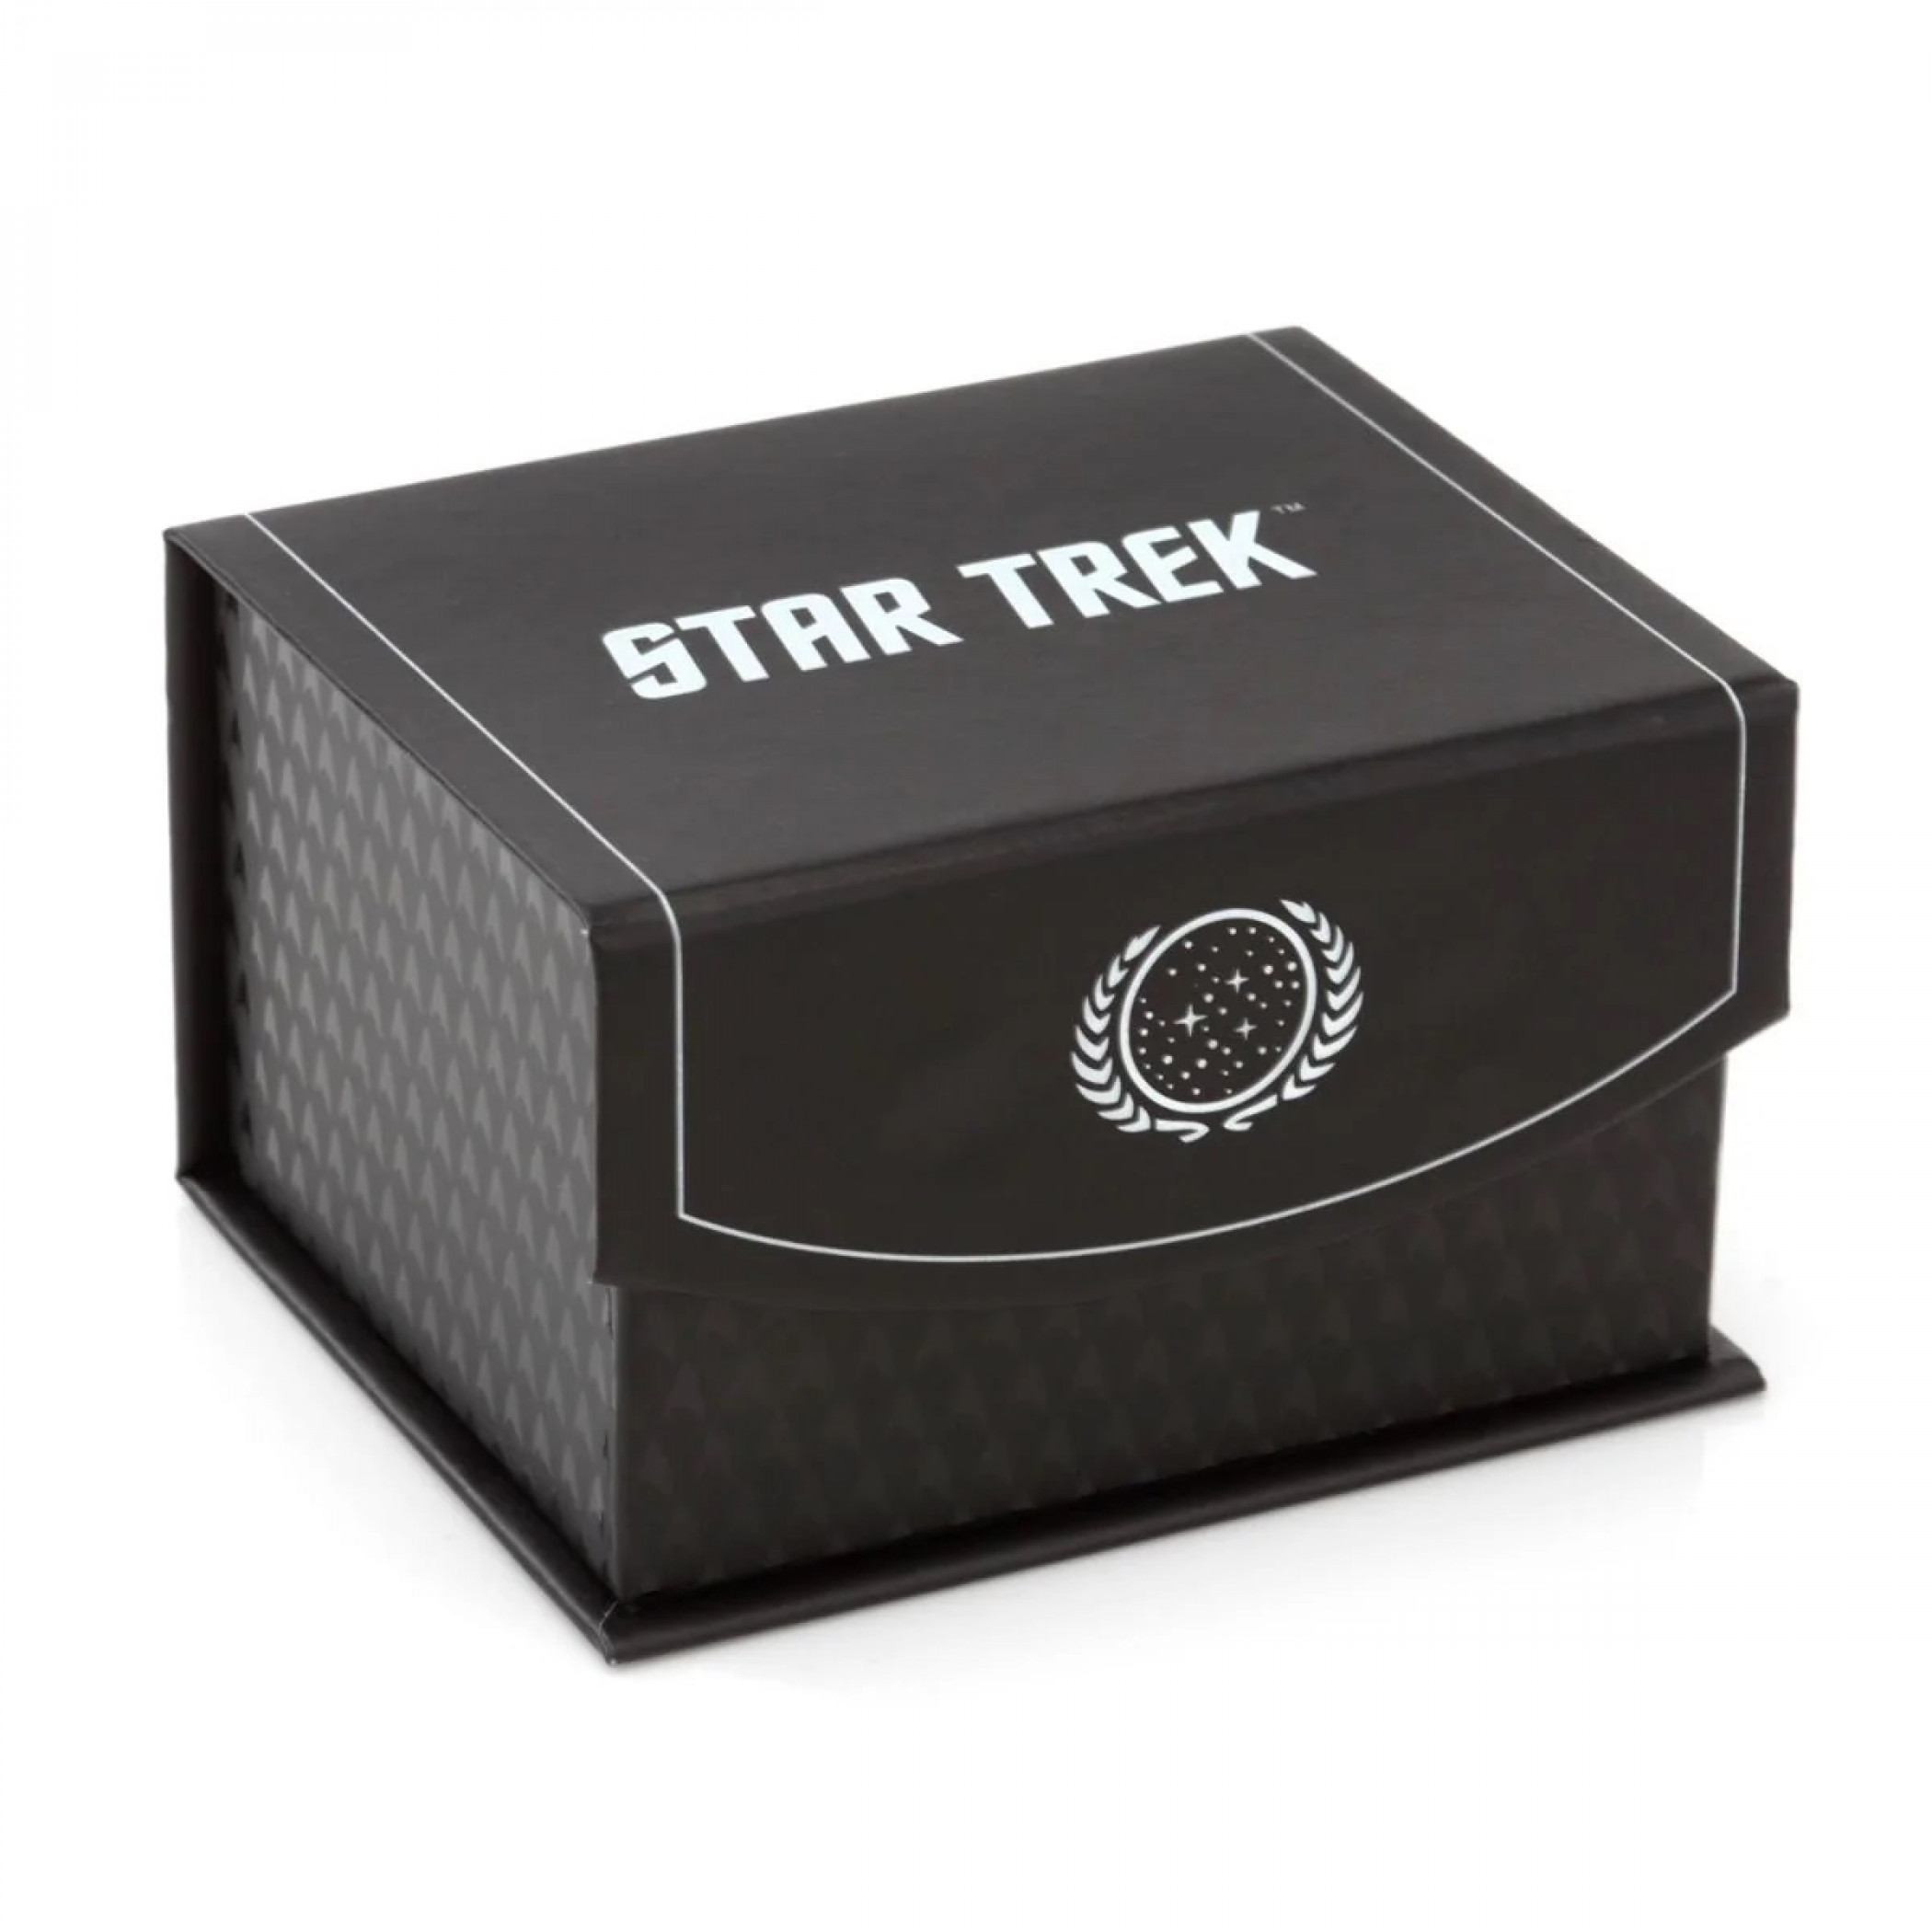 Star Trek Delta Shield Cutout Money Clip